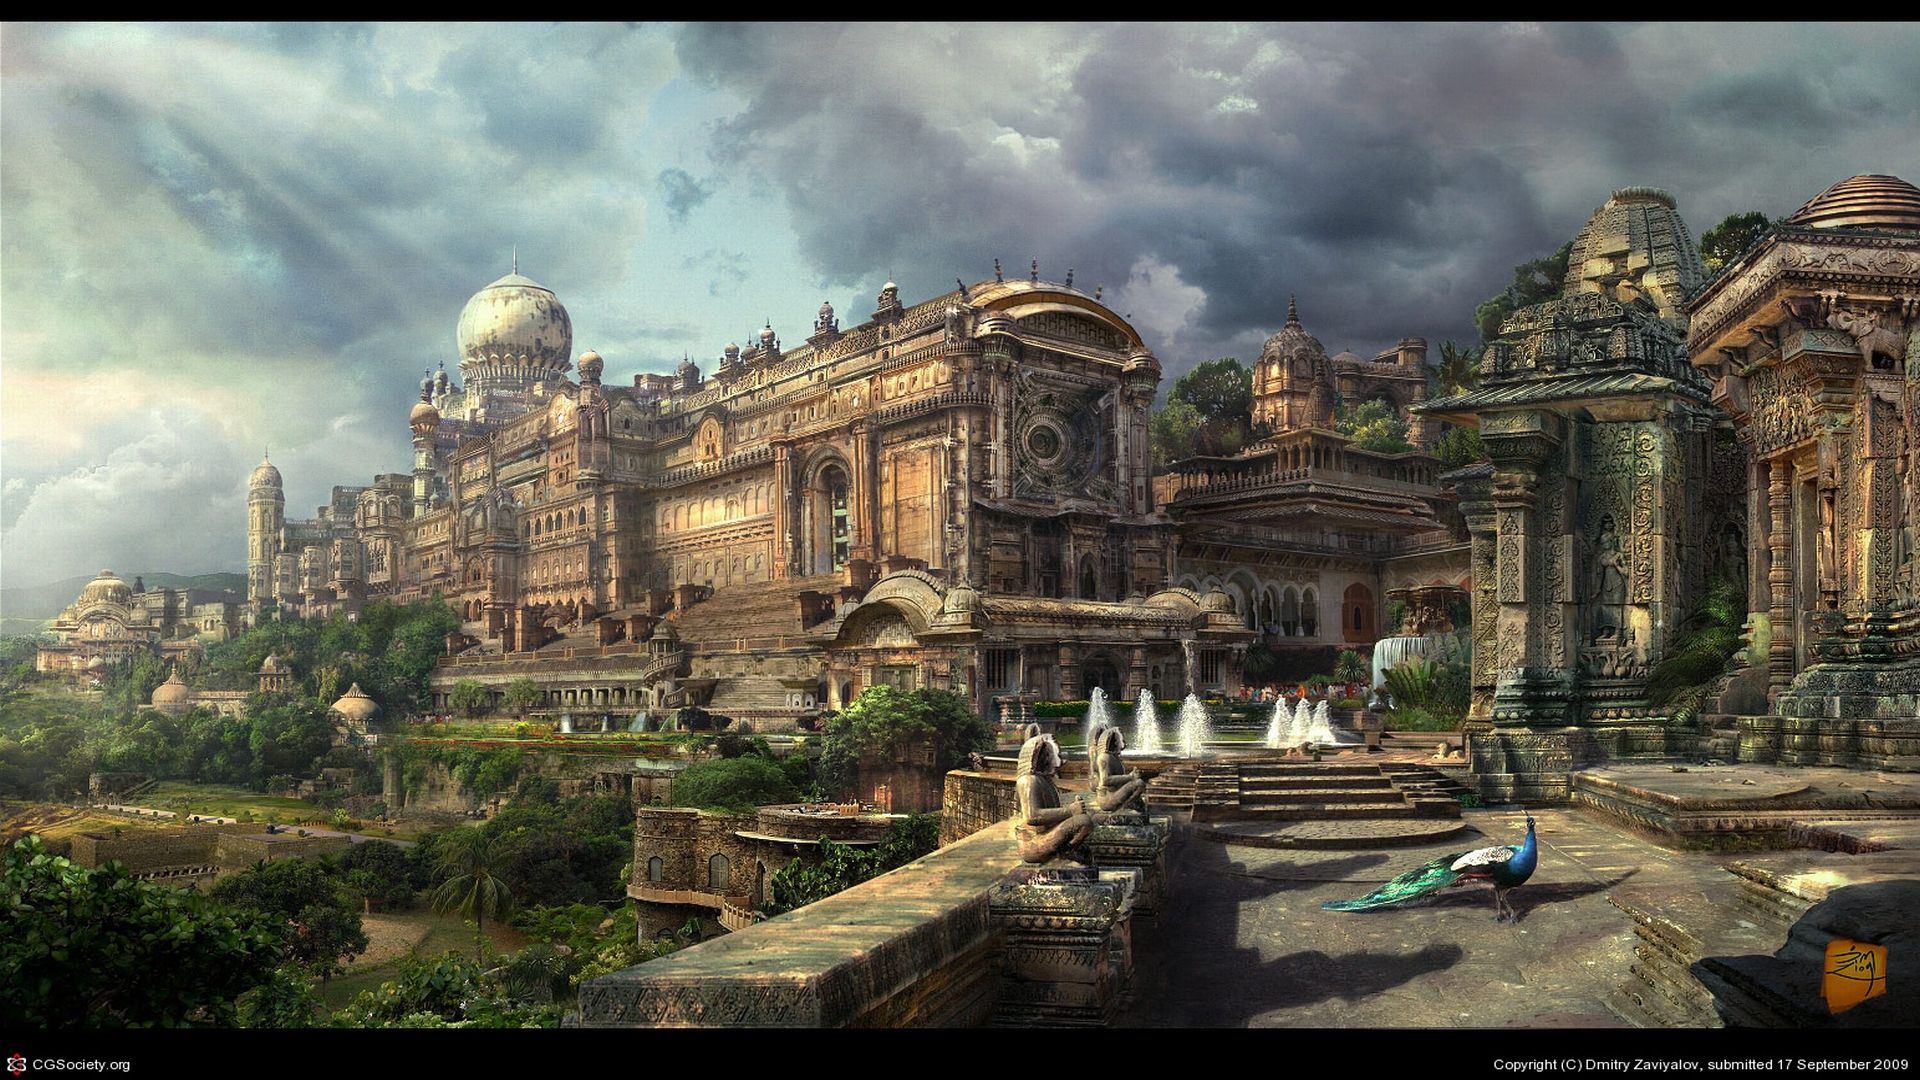 Palace-City of Theban